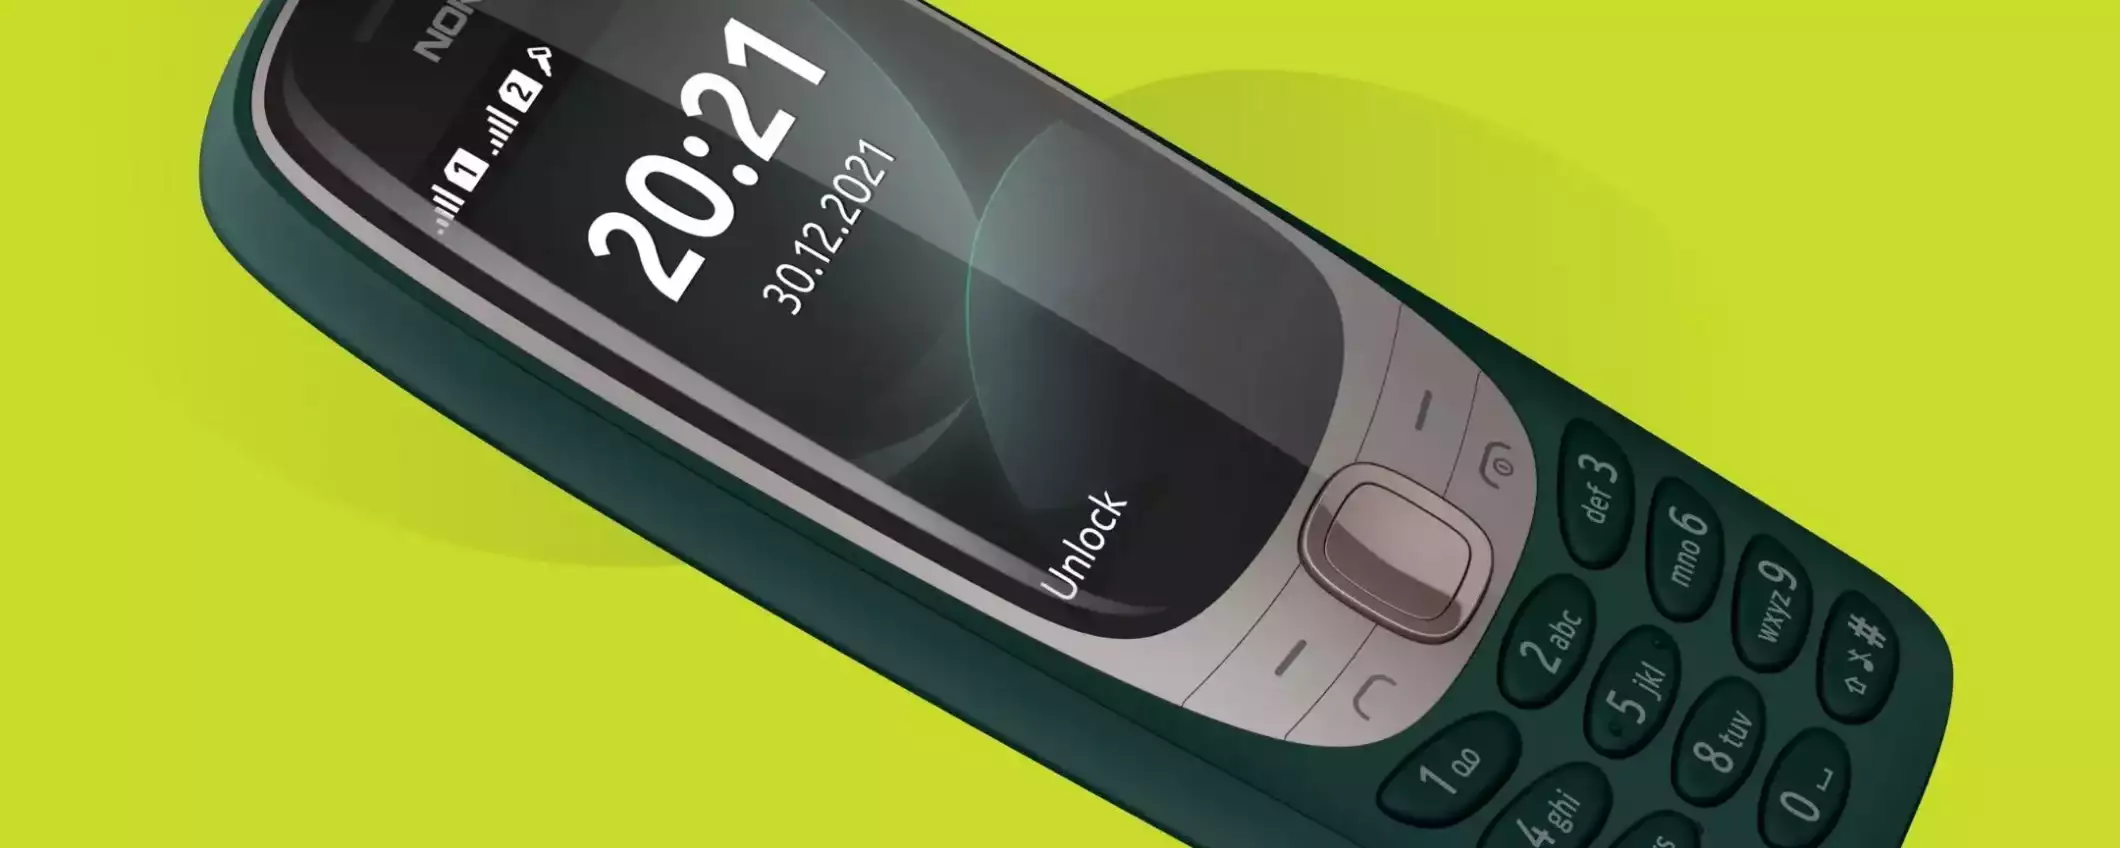 Nostalgici del passato? Ecco il (nuovo) Nokia 3210 dopo 14 anni